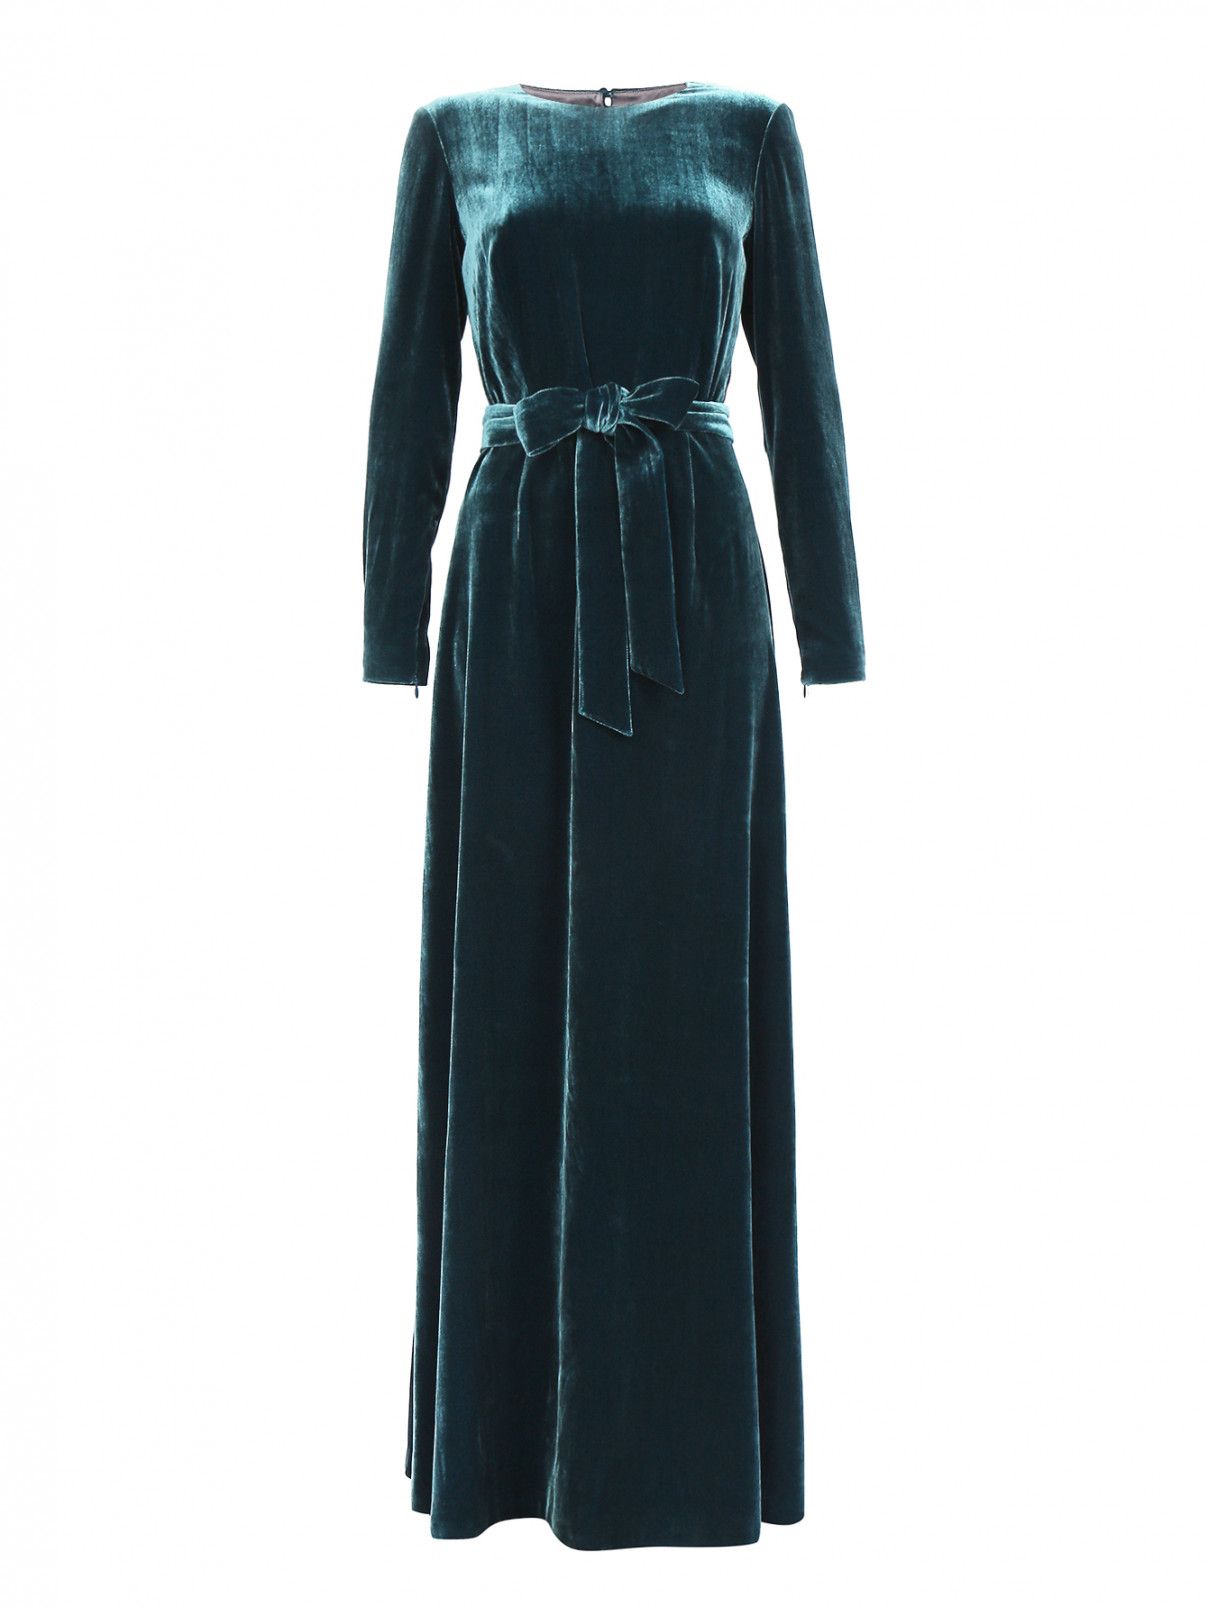 Платье-макси из бархата с поясом и вырезом на спине A La Russe  –  Общий вид  – Цвет:  Зеленый